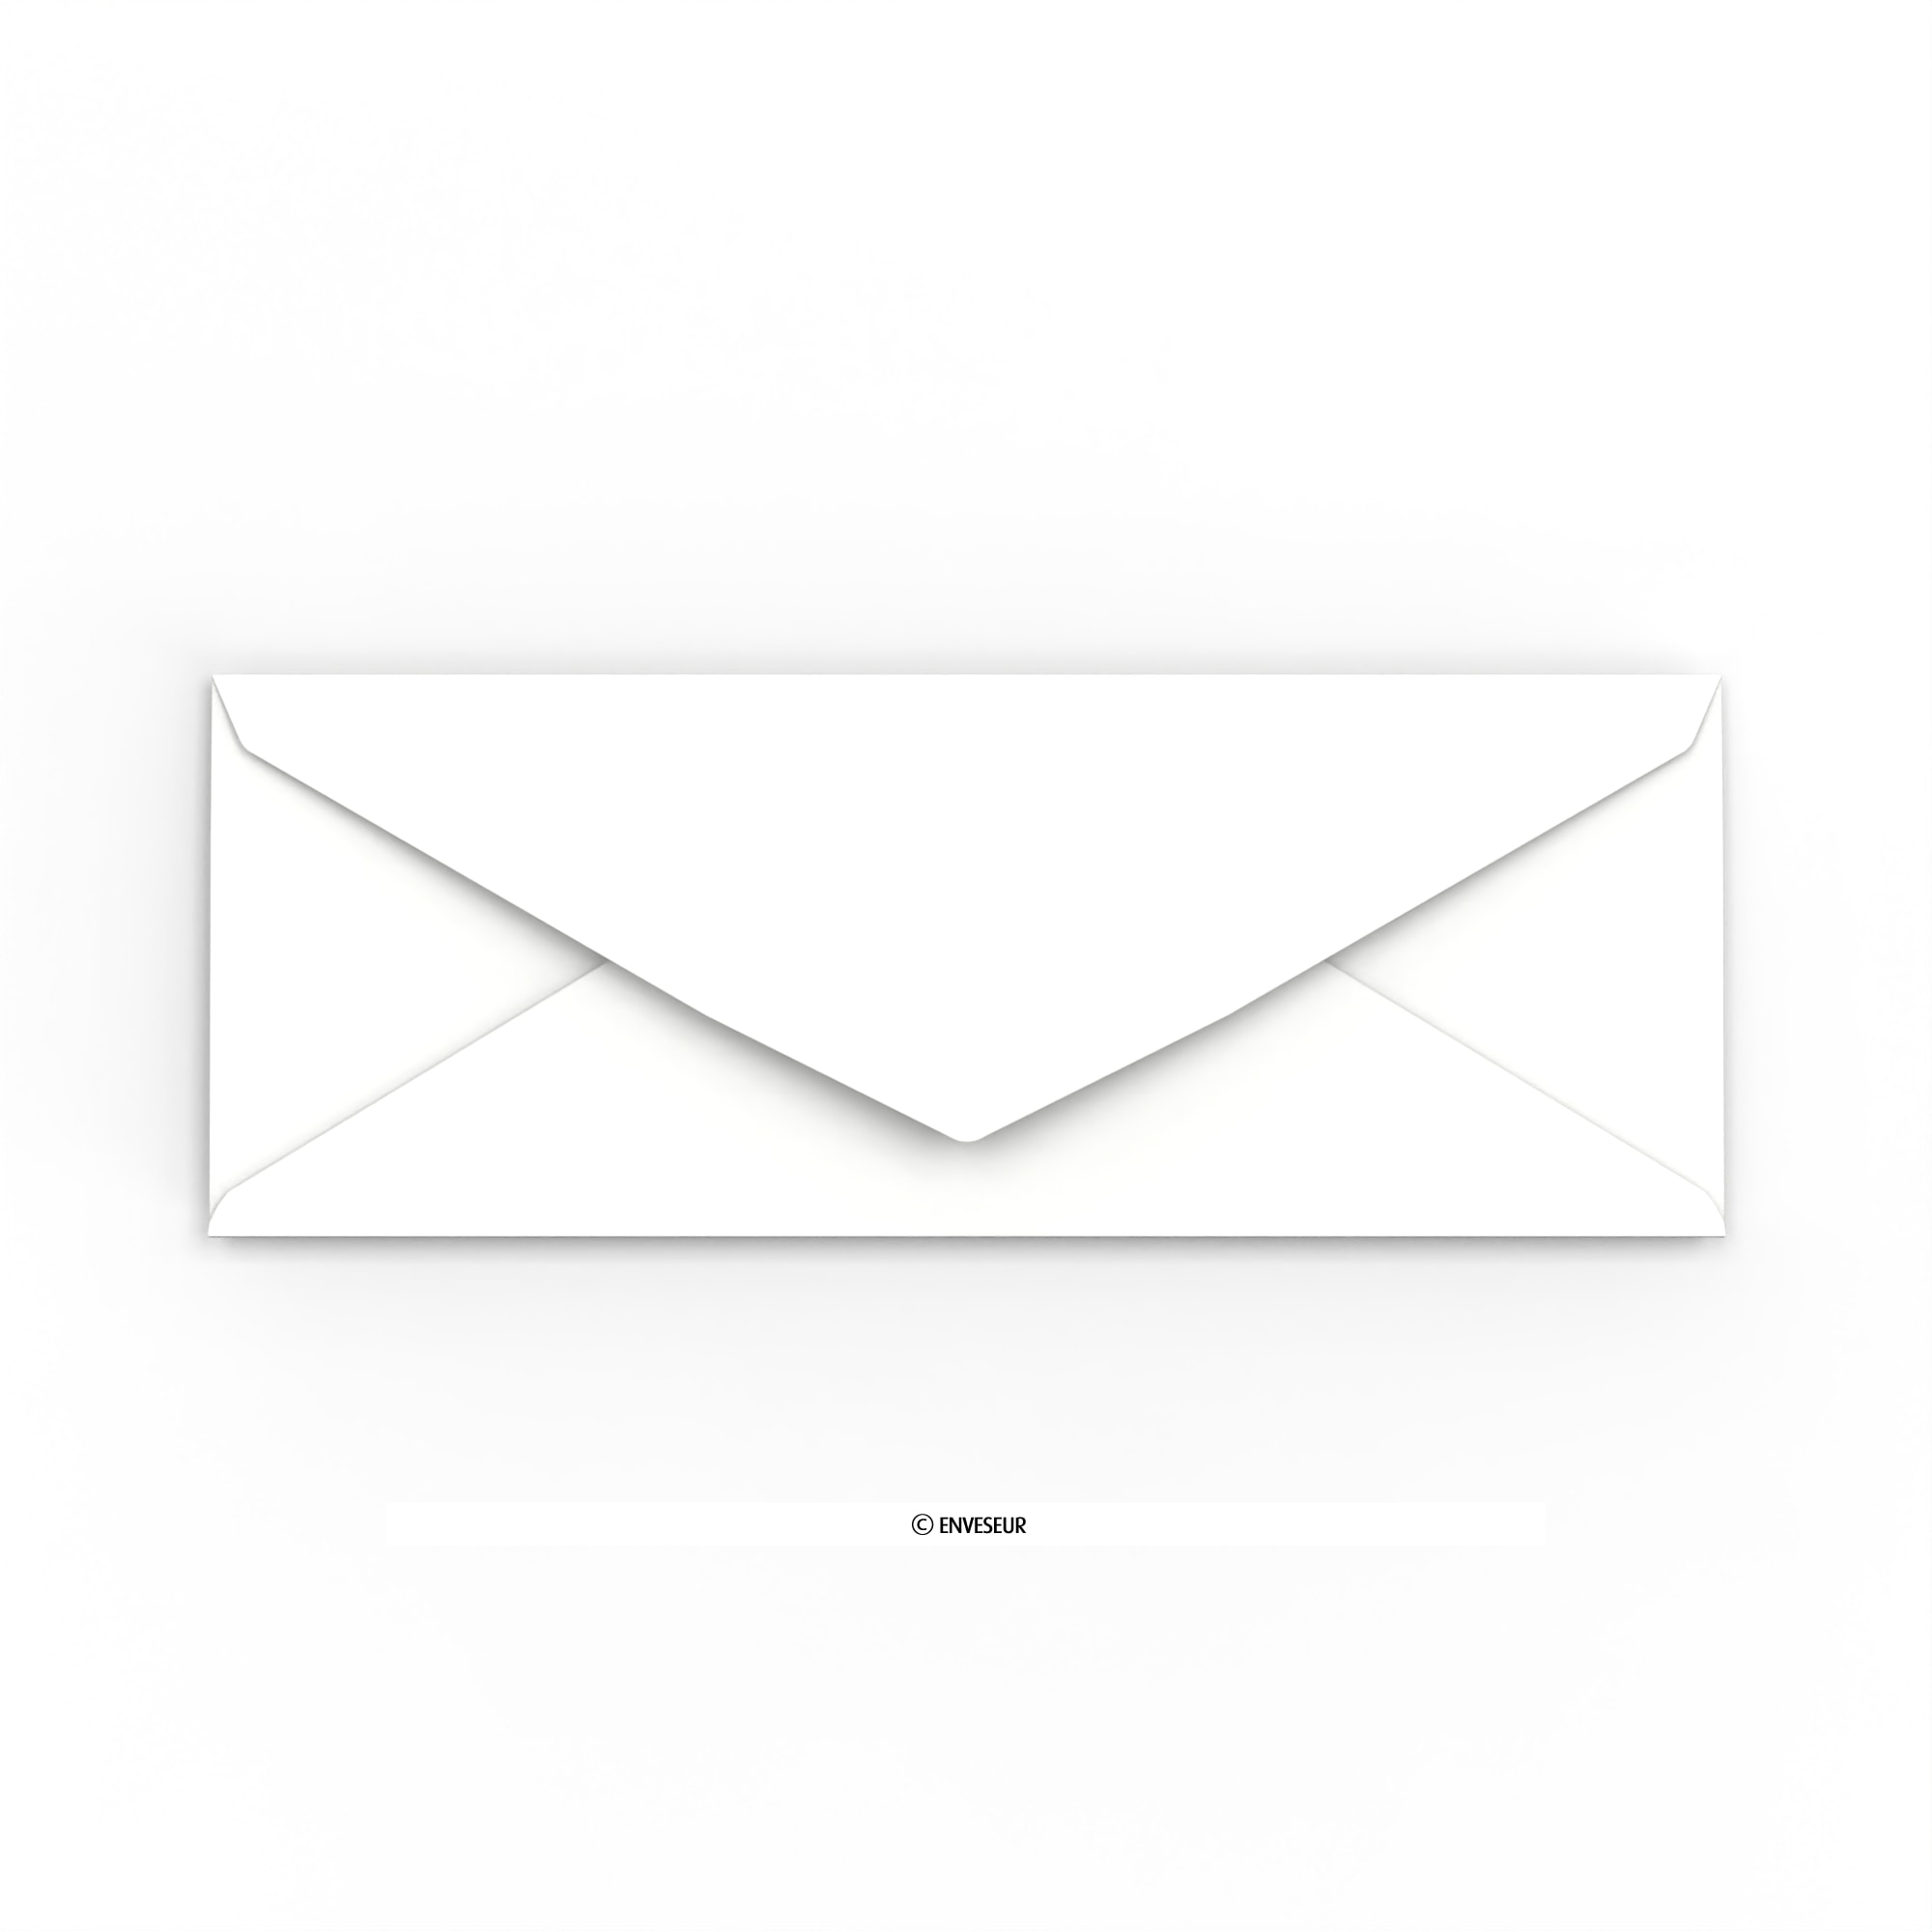 Enveloppes indéchirables avec BULLES A3/ C3 Blanc